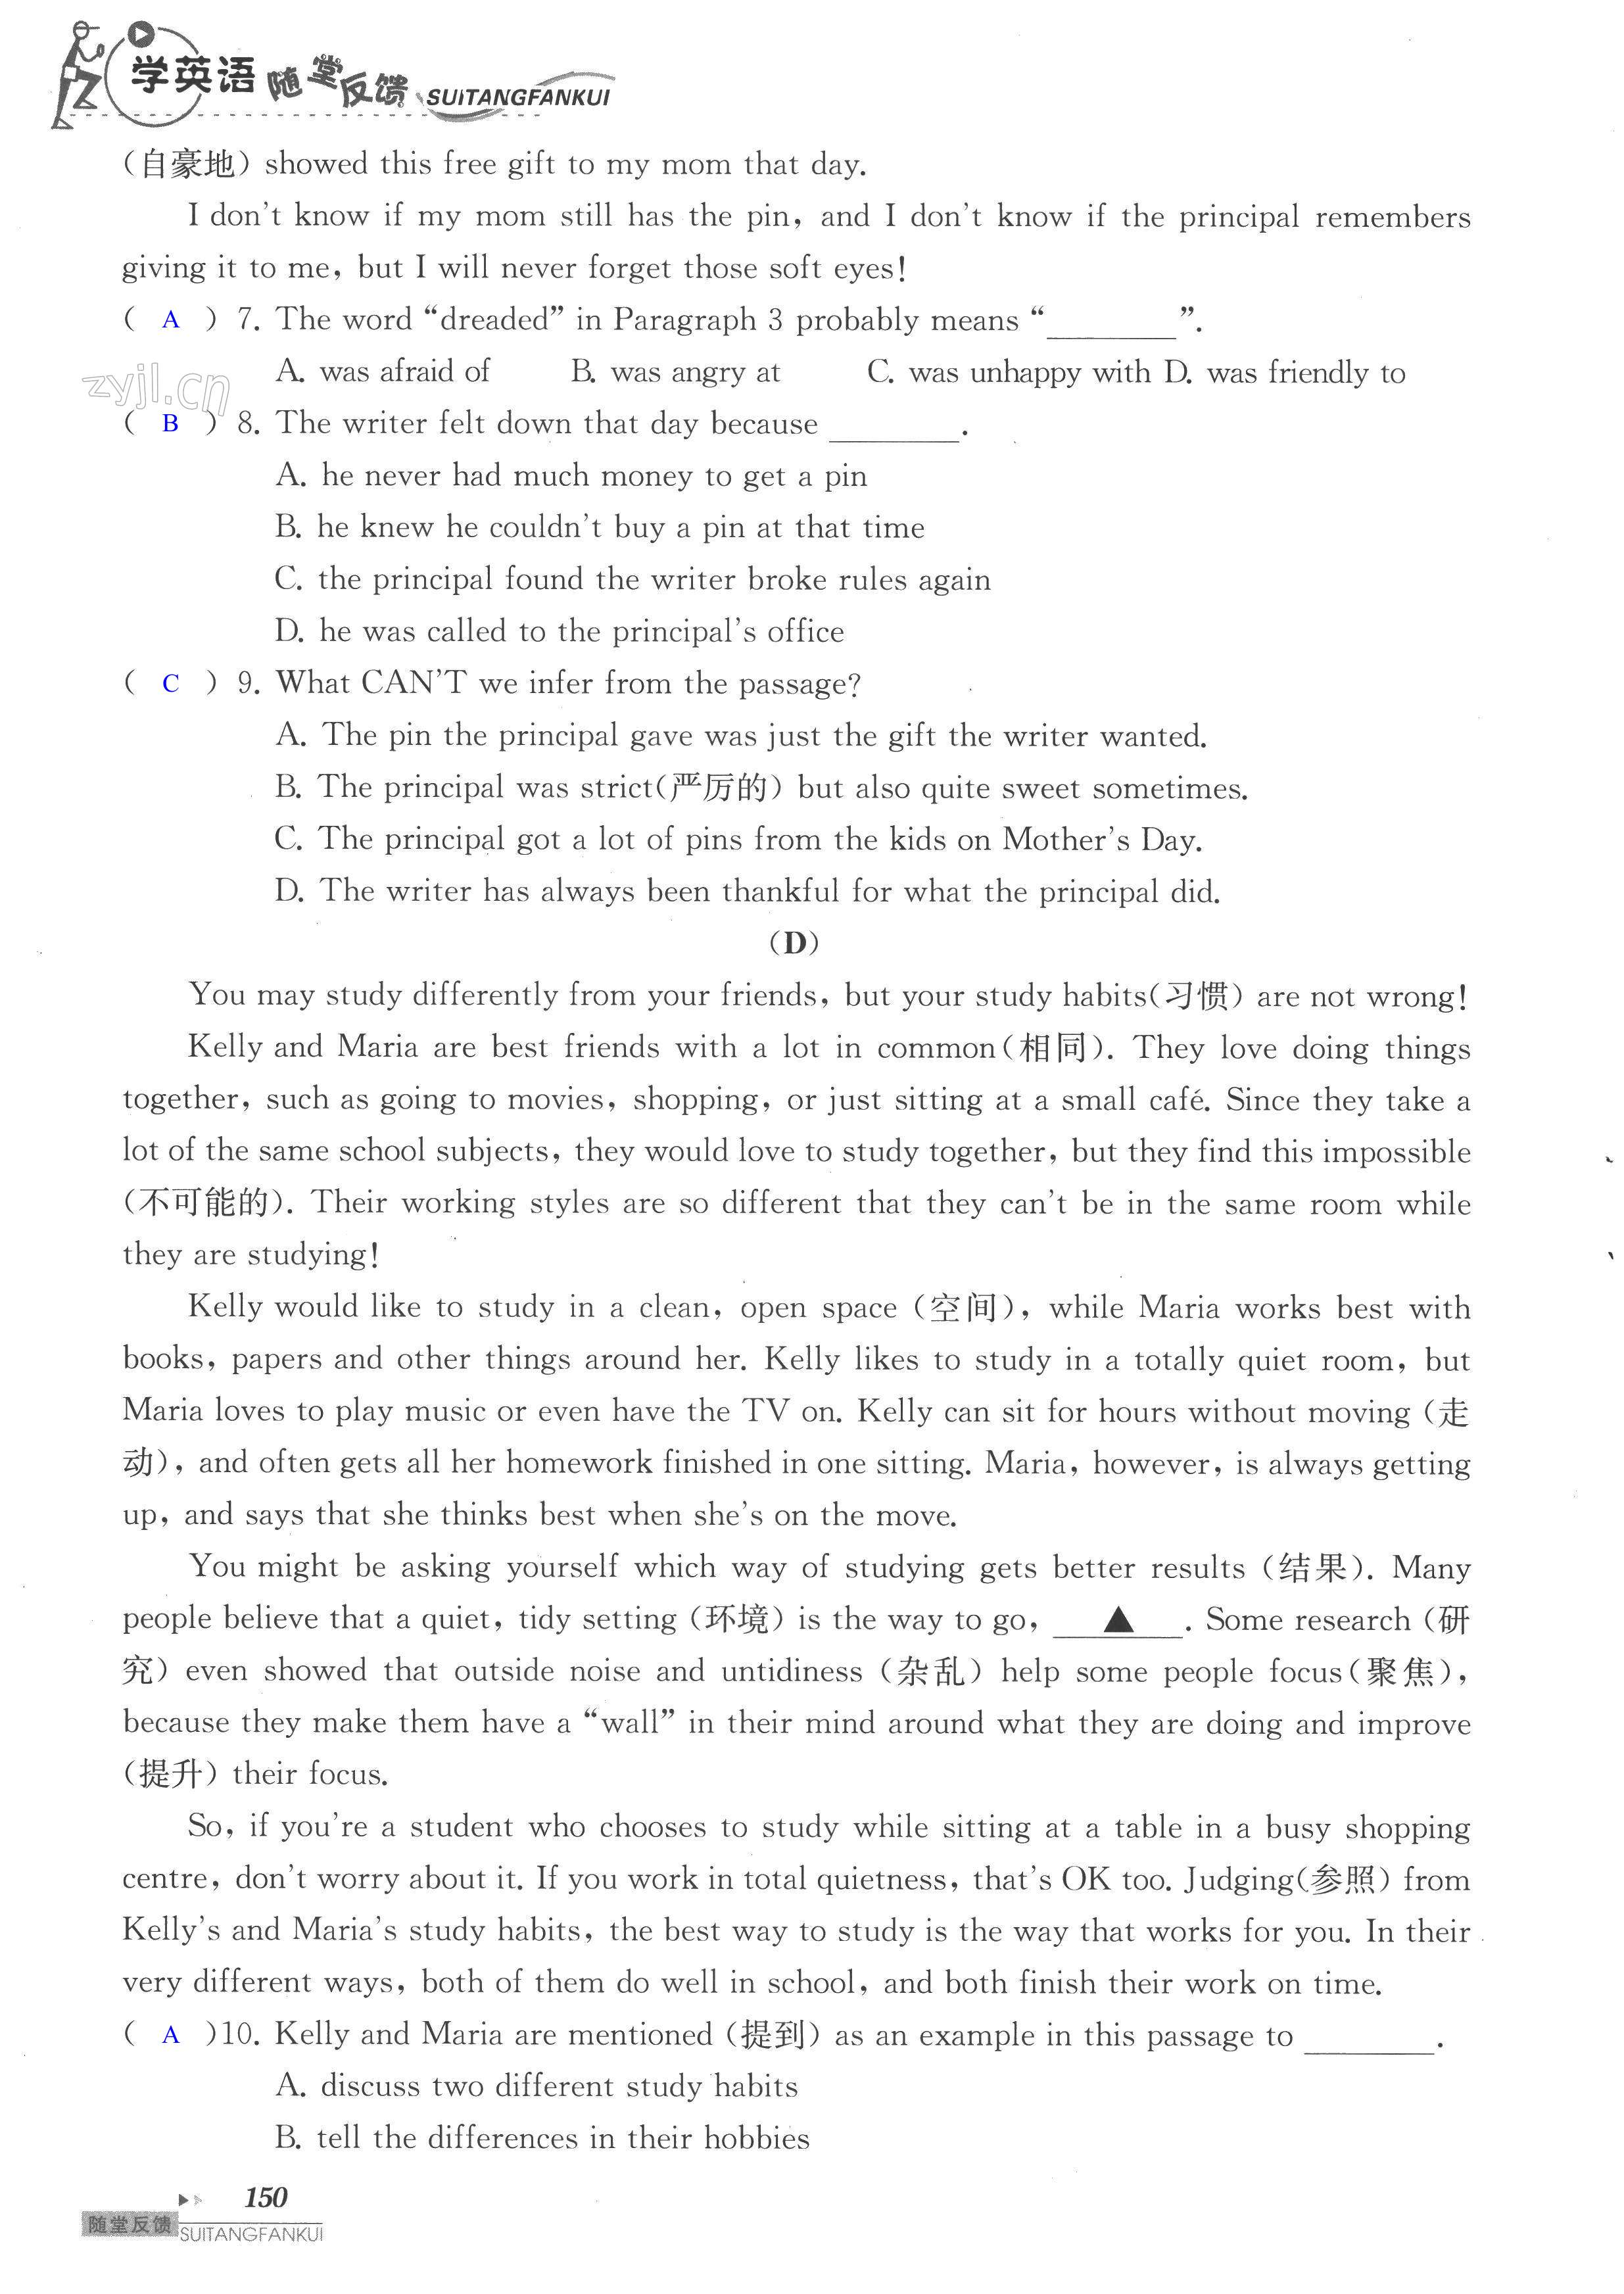 单元综合测试卷 Test for Unit 1 of 8A - 第150页